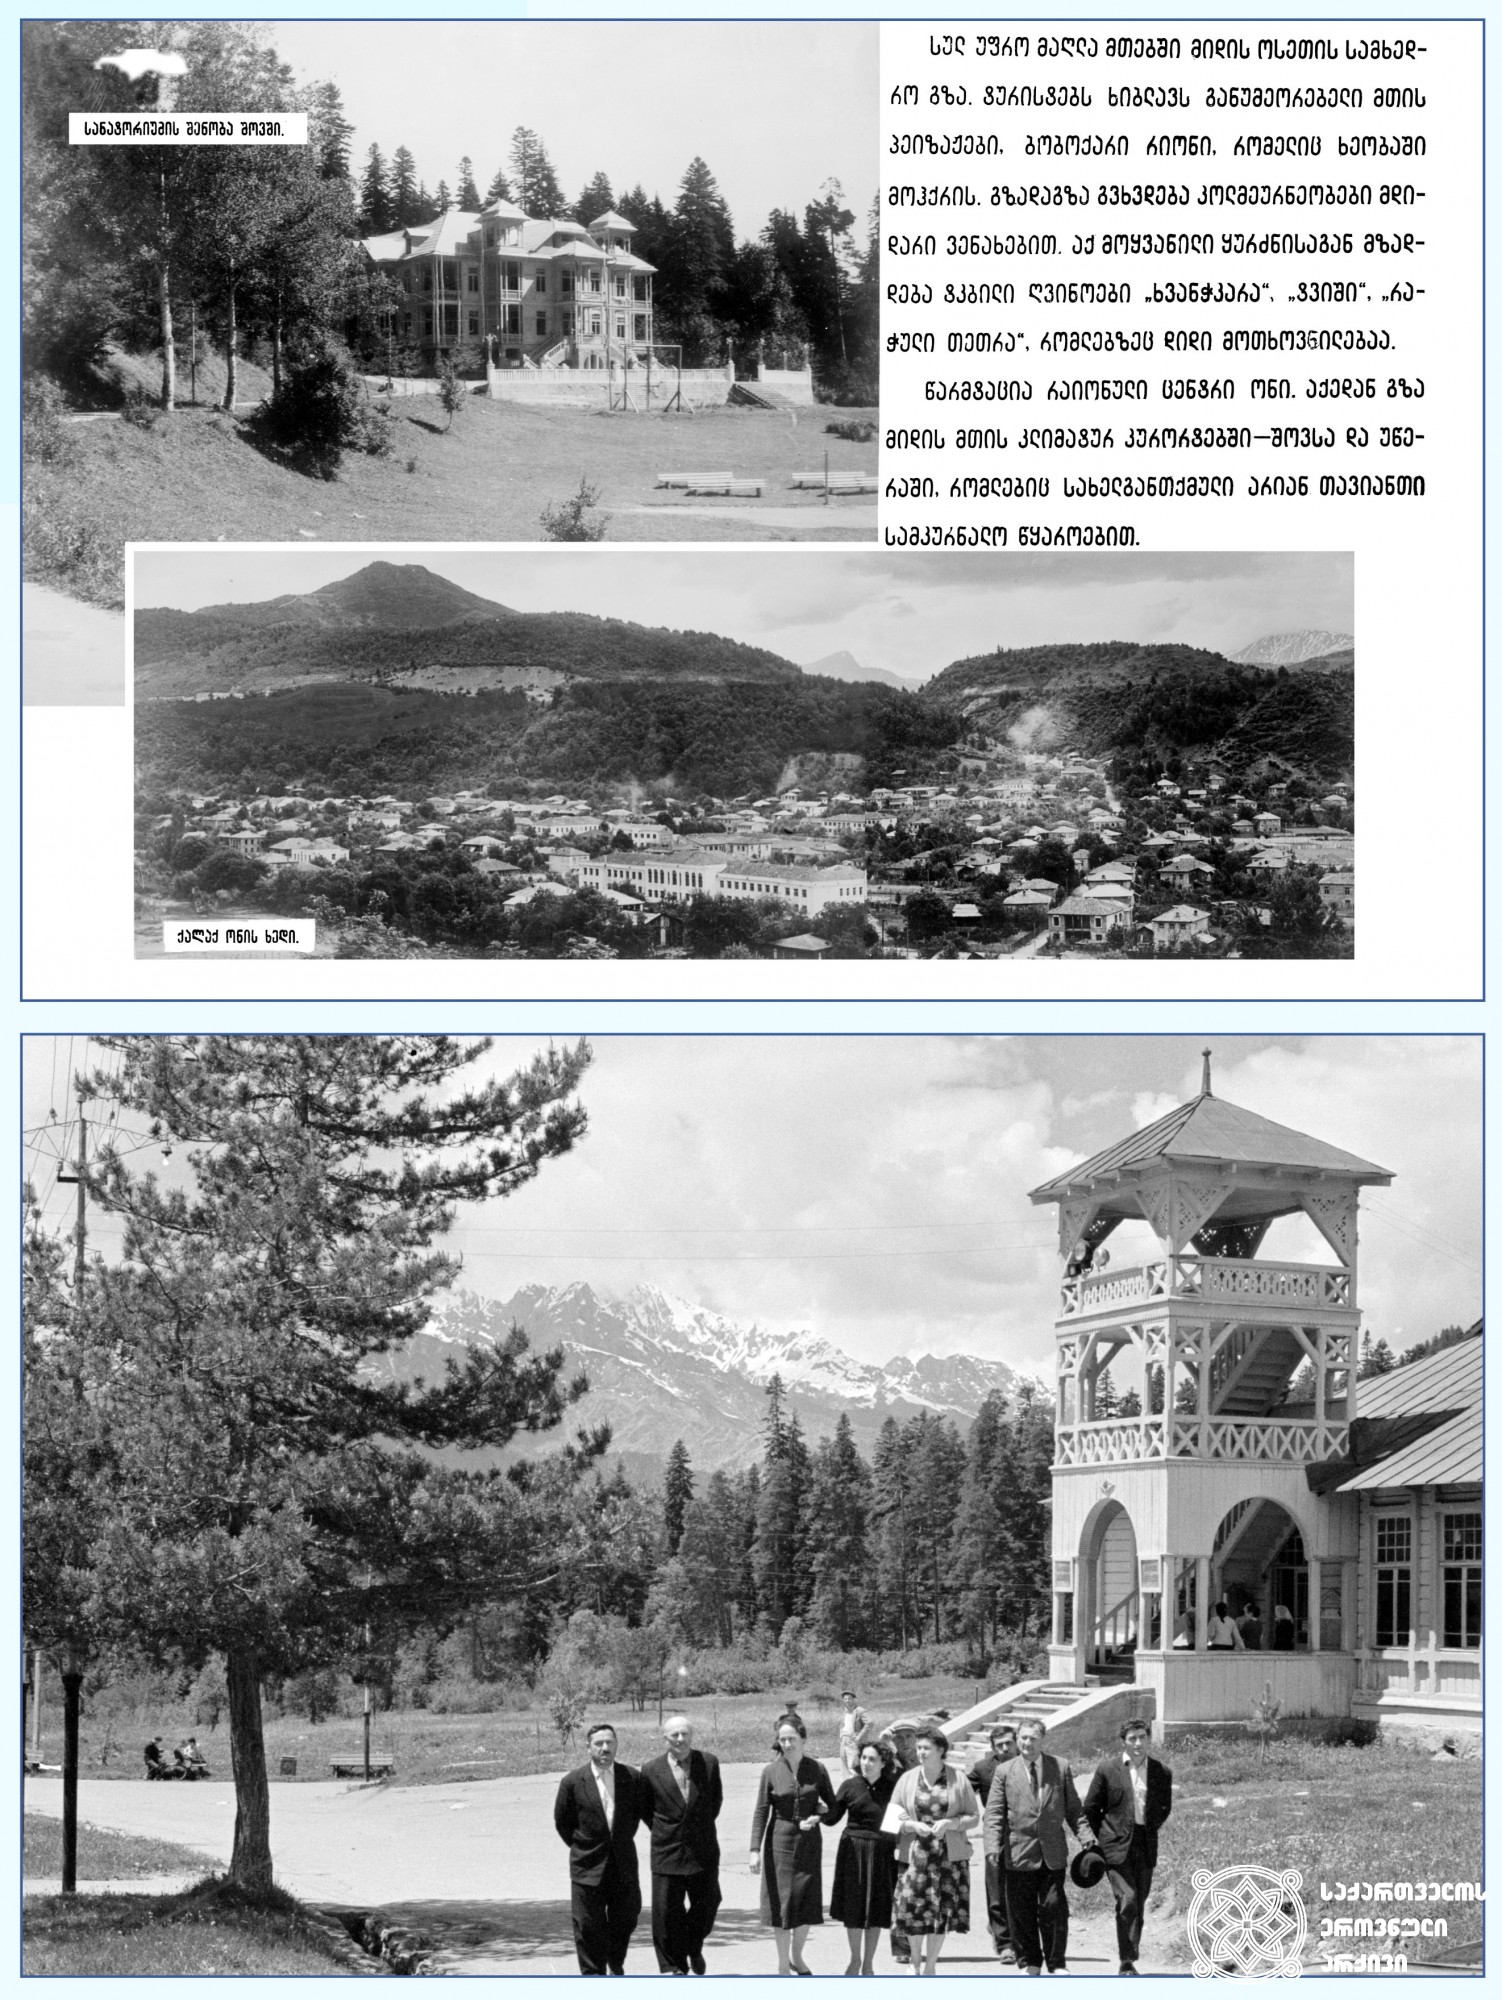 ზედა: სანატორიუმი შოვში და ქალაქ ონის ხედი, 1957 წელი. <br>
ქვედა: შოვი, ონის მუნიციპალიტეტი, 1963 წელი. <br>
შოვი — კლიმატურ-ბალნეოლოგიური კურორტი ონის მუნიციპალიტეტში. მდებარეობს მდინარე ჭანჭახის ხეობაში, ზღვის დონიდან 1520 მეტრის სიმაღლეზე. ცნობილია მთის ჰავითა და ნახშირმჟავა-ჰიდროკარბონატული ნატრიუმ-კალციუმიანი მინერალური წყაროებით. <br>
კურორტი შოვი ექიმ შამშე ლეჟავას წყალობით გაიხსნა. მან სამედიცინო განათლება ვენაში 1905–1910 წლებში მიიღო. 1925 წლის 15 ივლისს სანატორიუმს საძირკველი ჩაეყარა. წიწვნარში აშენდა ორსართულიანი ლამაზი შენობა, სასტუმრო, ელექტროსადგური, კურორტის მომსახურე პერსონალის საცხოვრებელი სახლი, პოლიკლინიკა, მეორე სანატორიუმი. 1929 წელს კურორტი საზეიმოდ გაიხსნა. <br>
Top: The Sanatorium in Shovi and the view of the city of Oni, 1957. <br>
Bottom: Shovi, Oni Municipality, 1963. <br>
Shovi – climate-balneological resort in Oni municipality. Located in the valley of the Chanchakhi River, at an altitude of 1520 meters above the sea level. It is famous for its mountain climate and hydrocarbon sodium-calcium mineral springs.  <br>
Shovi resort was opened thanks to Dr. Shamshe Lezhava. He received his medical education in Vienna between 1905-1910. The foundation of the sanatorium building was laid on July 15, 1925. A two-storey beautiful building, a hotel, a power plant, a residential house for the resort staff, a polyclinic and a second sanatorium were built in coniferous forest. In 1929, the resort was inaugurated.